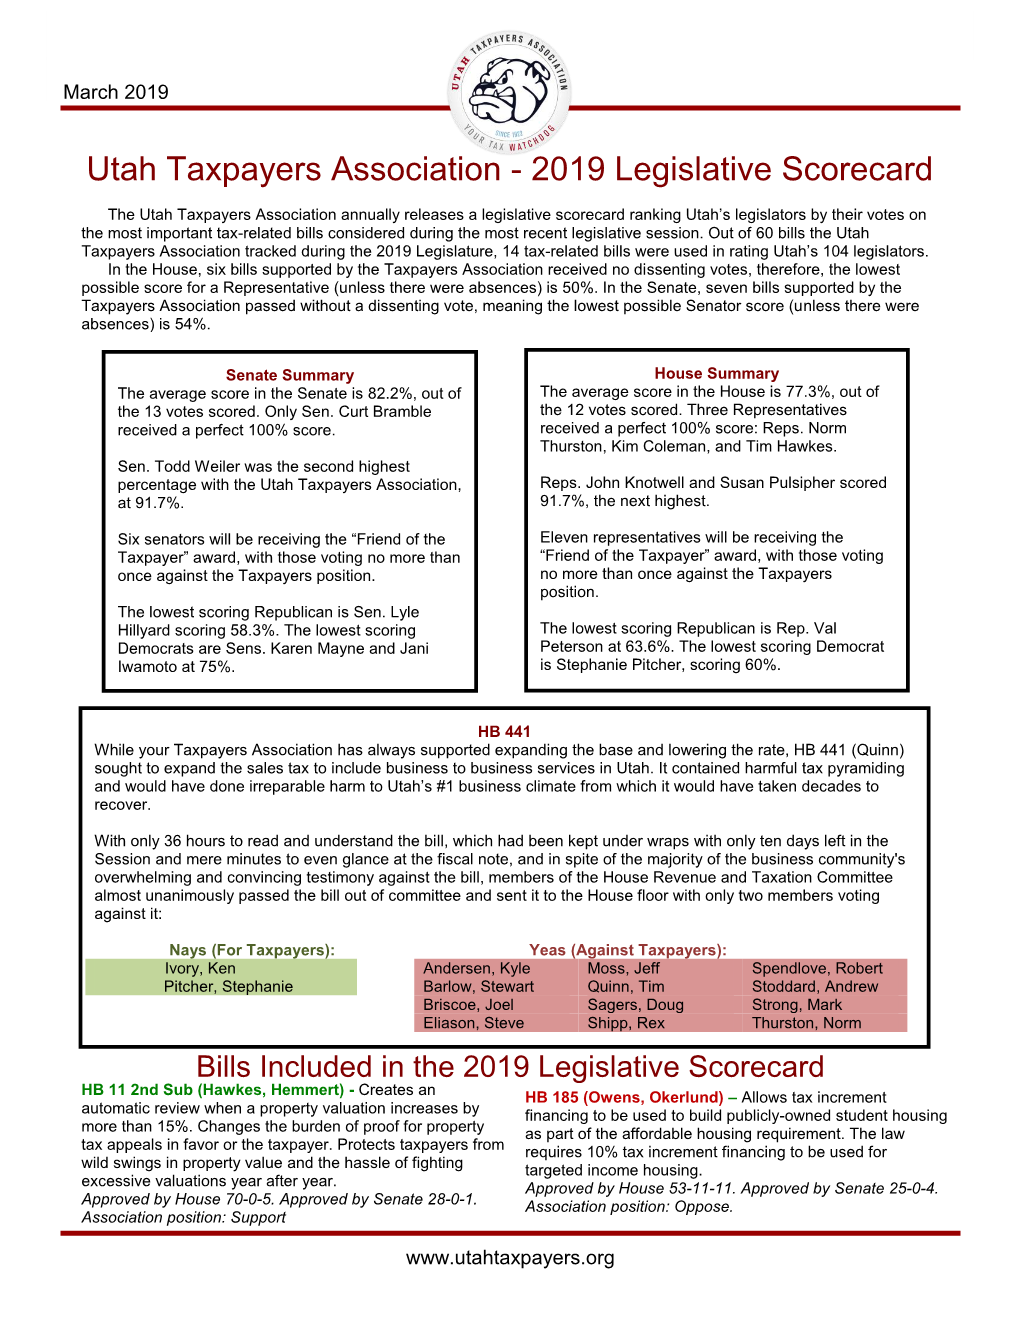 2019 Legislative Scorecard